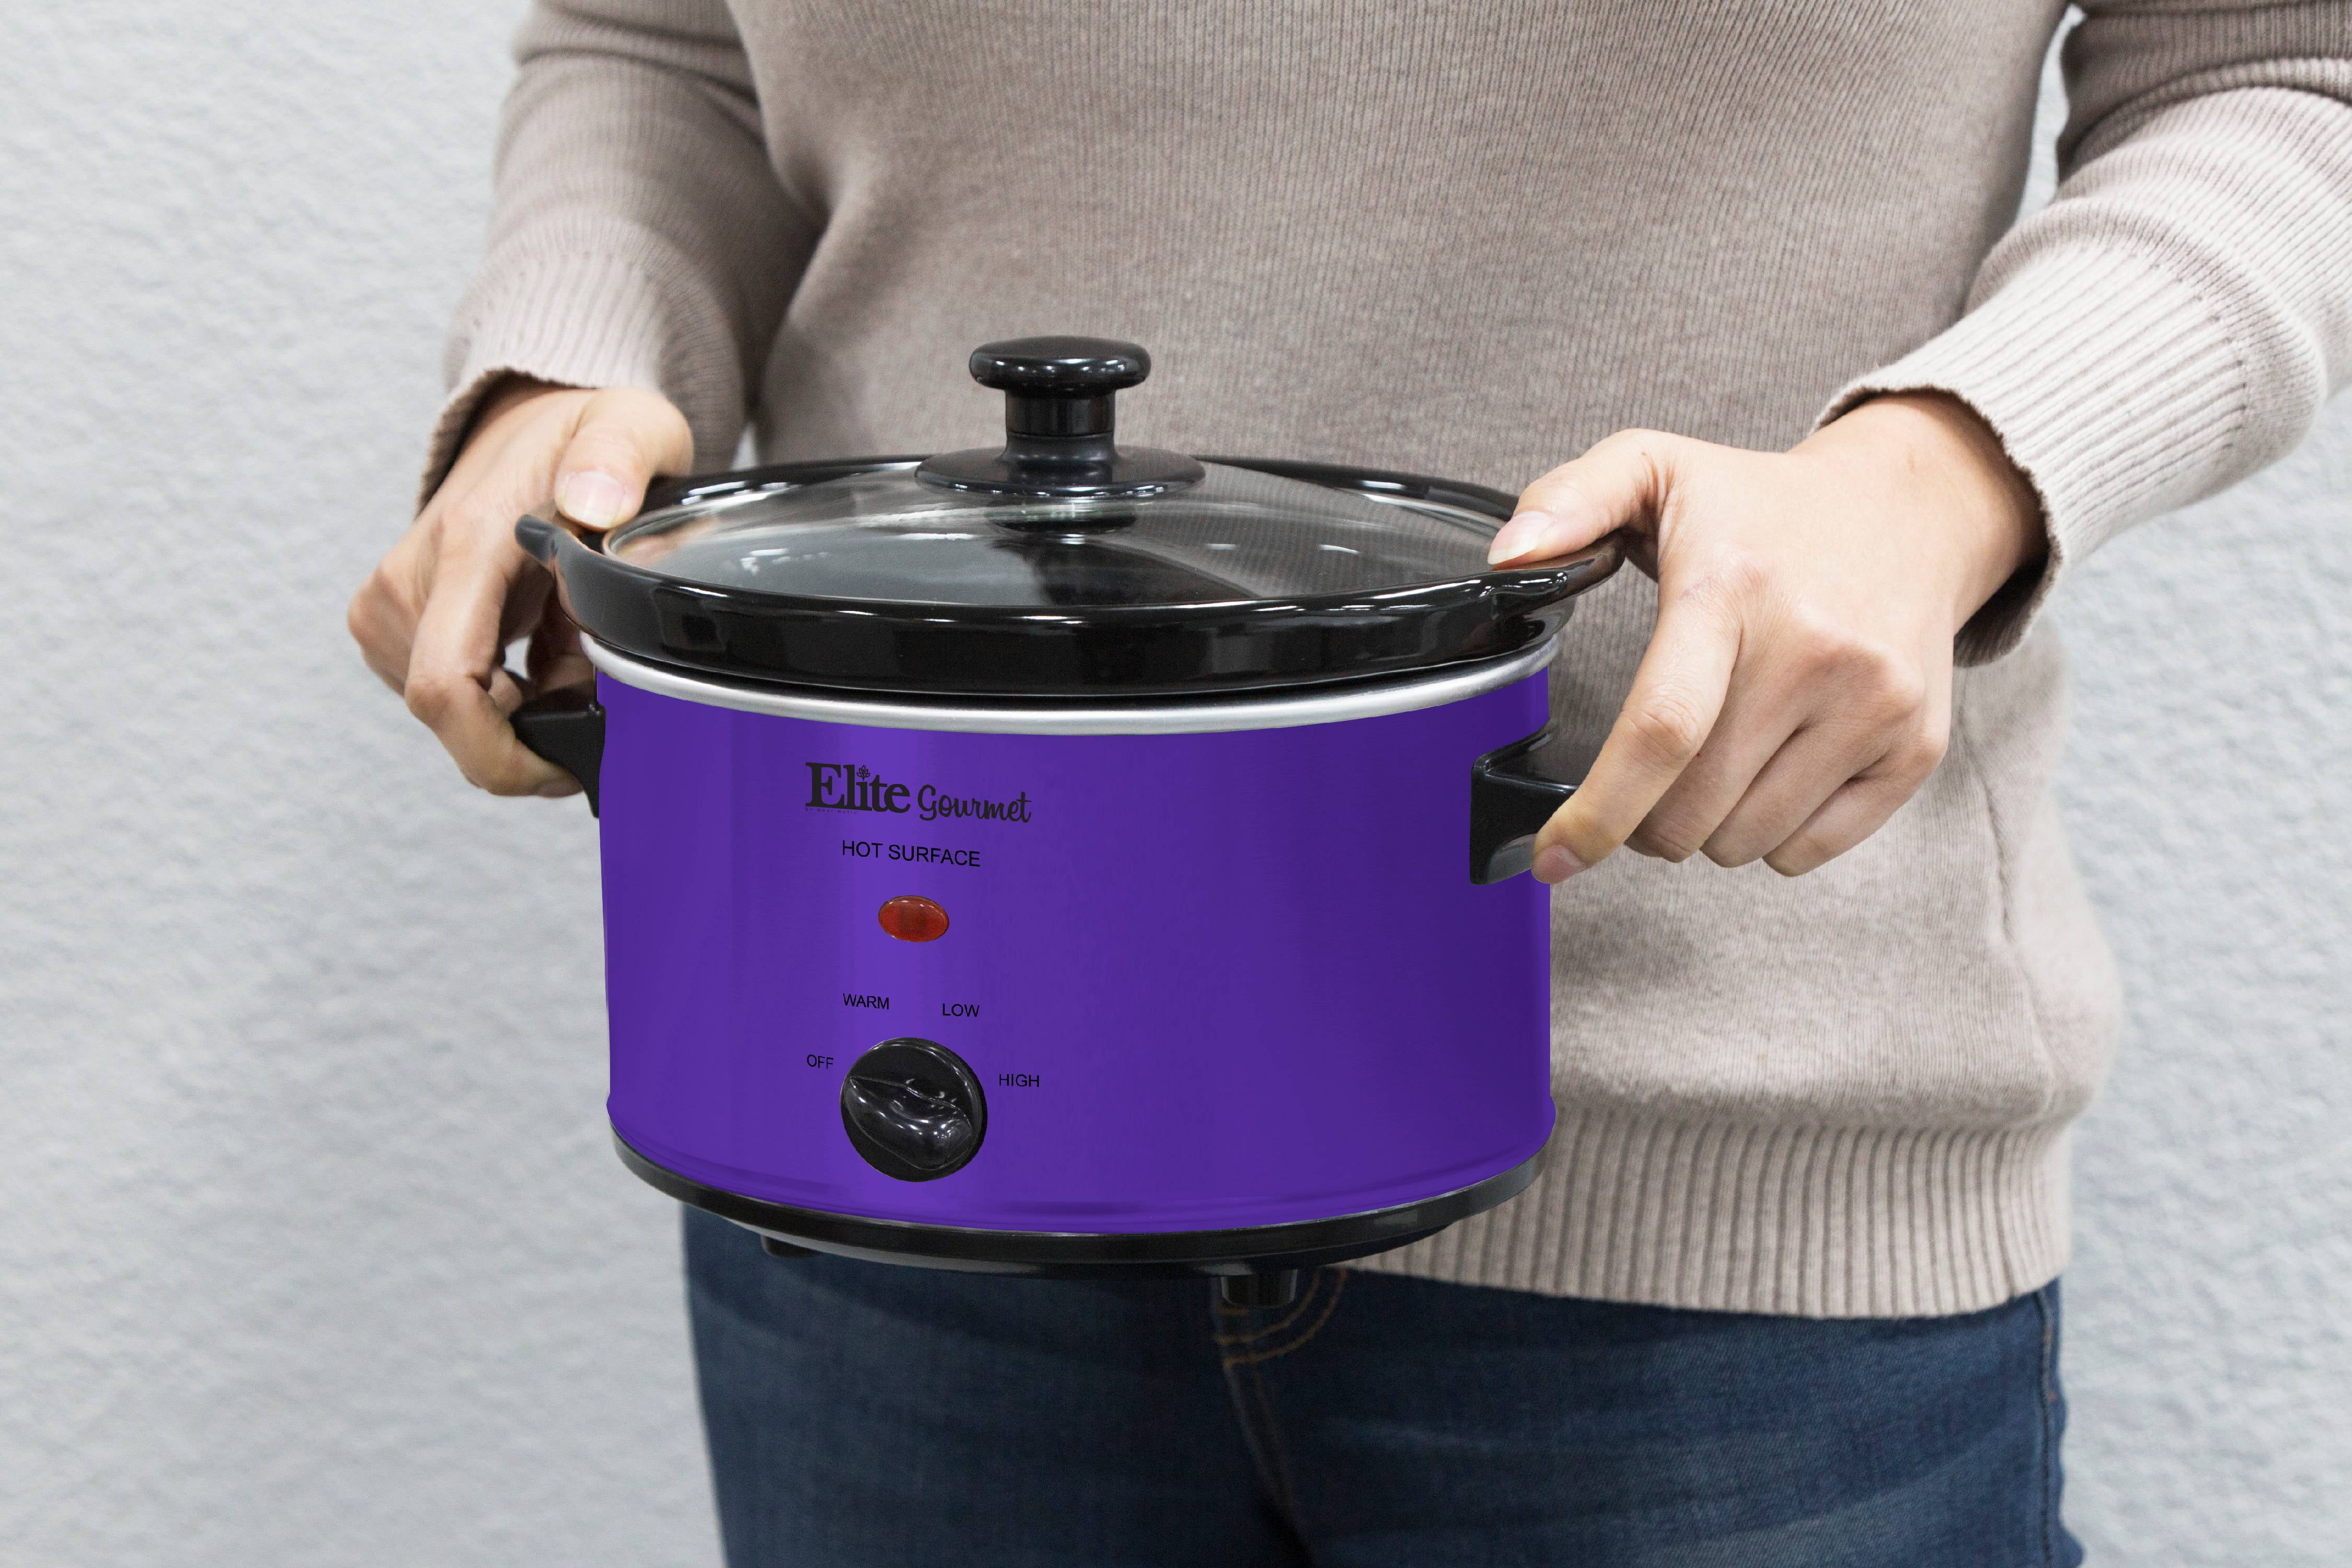 Purple Crock Pot 